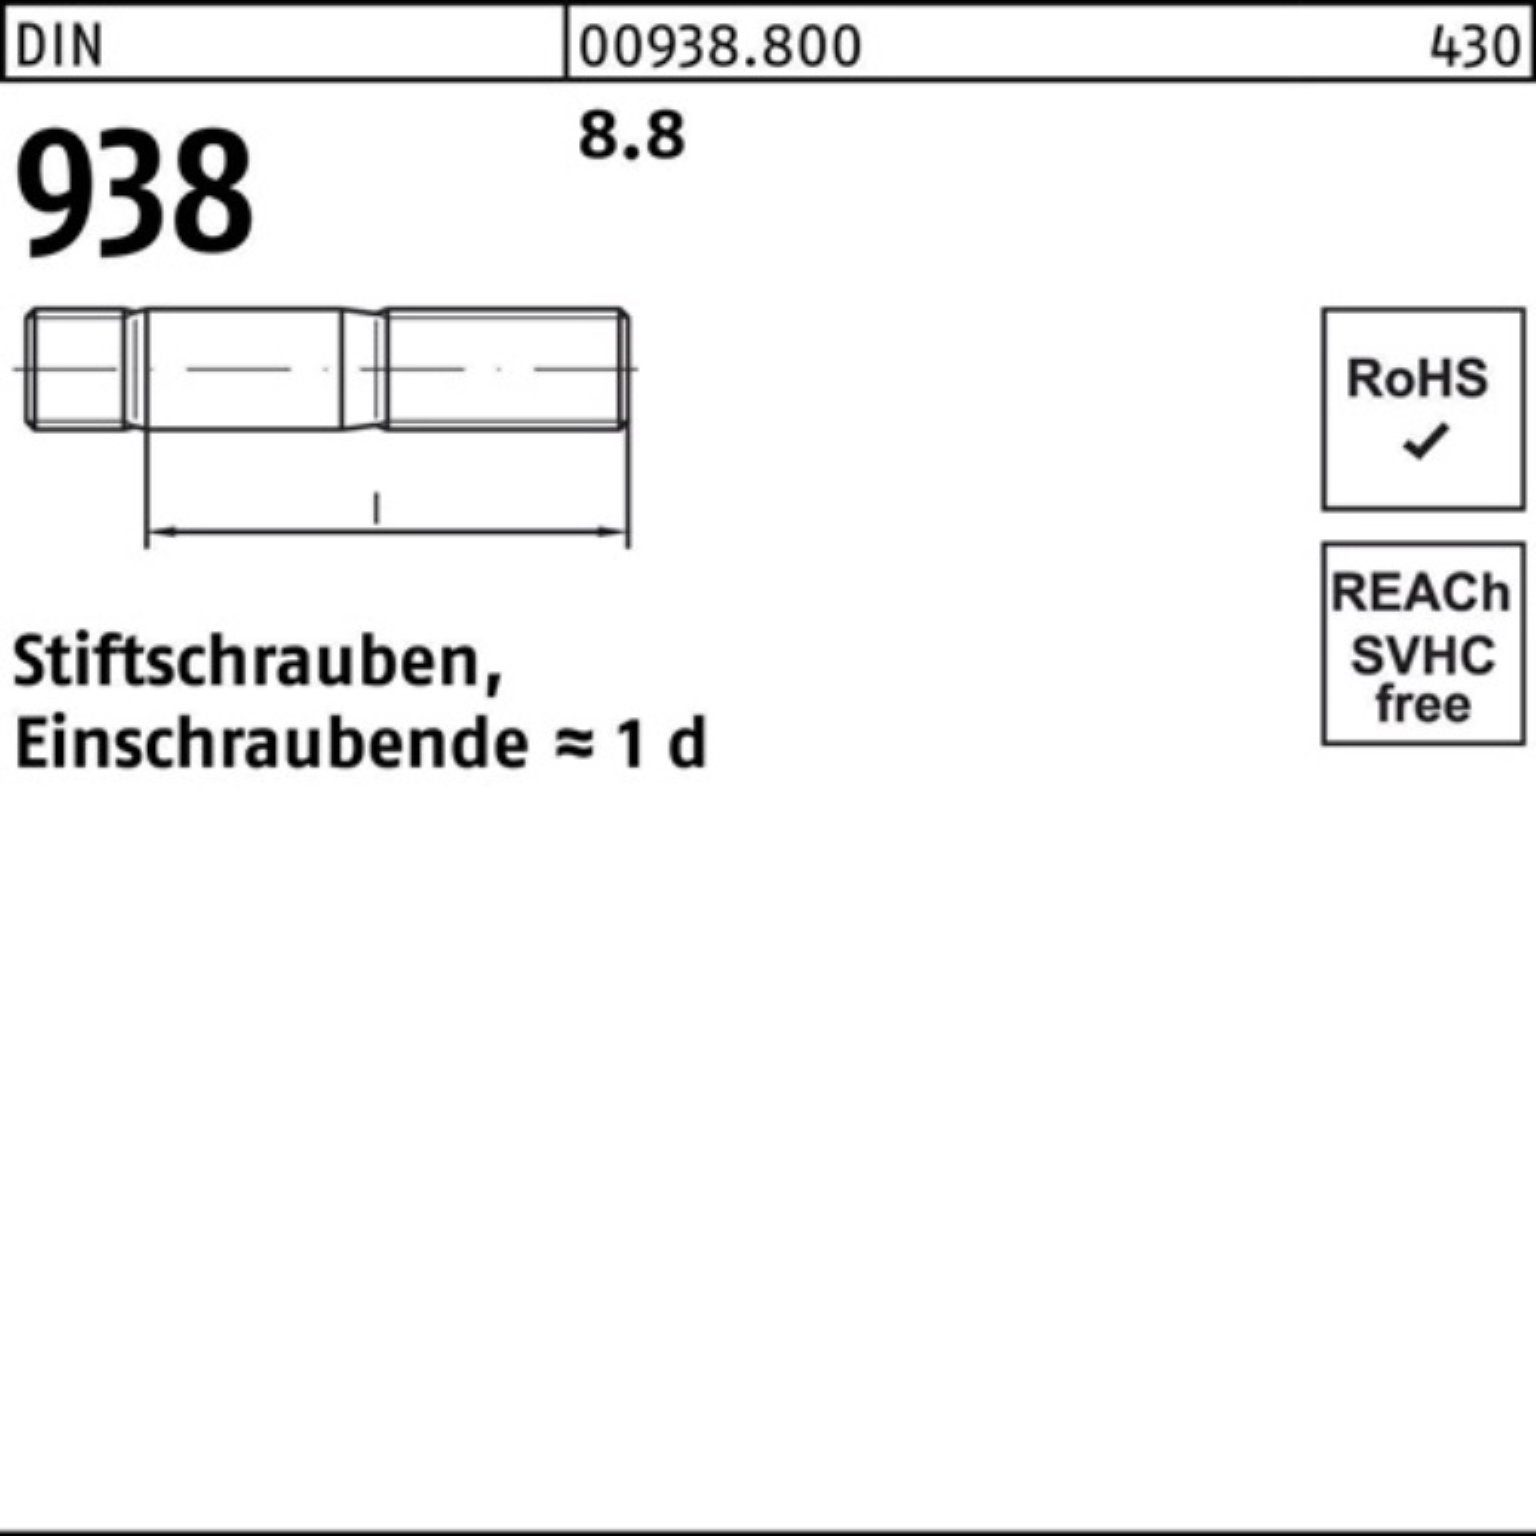 100er Stiftschraube 938 Stiftschraube DIN Pack Stück 8.8 8.8 Reyher 10 M20x 938 DIN 55 Sti